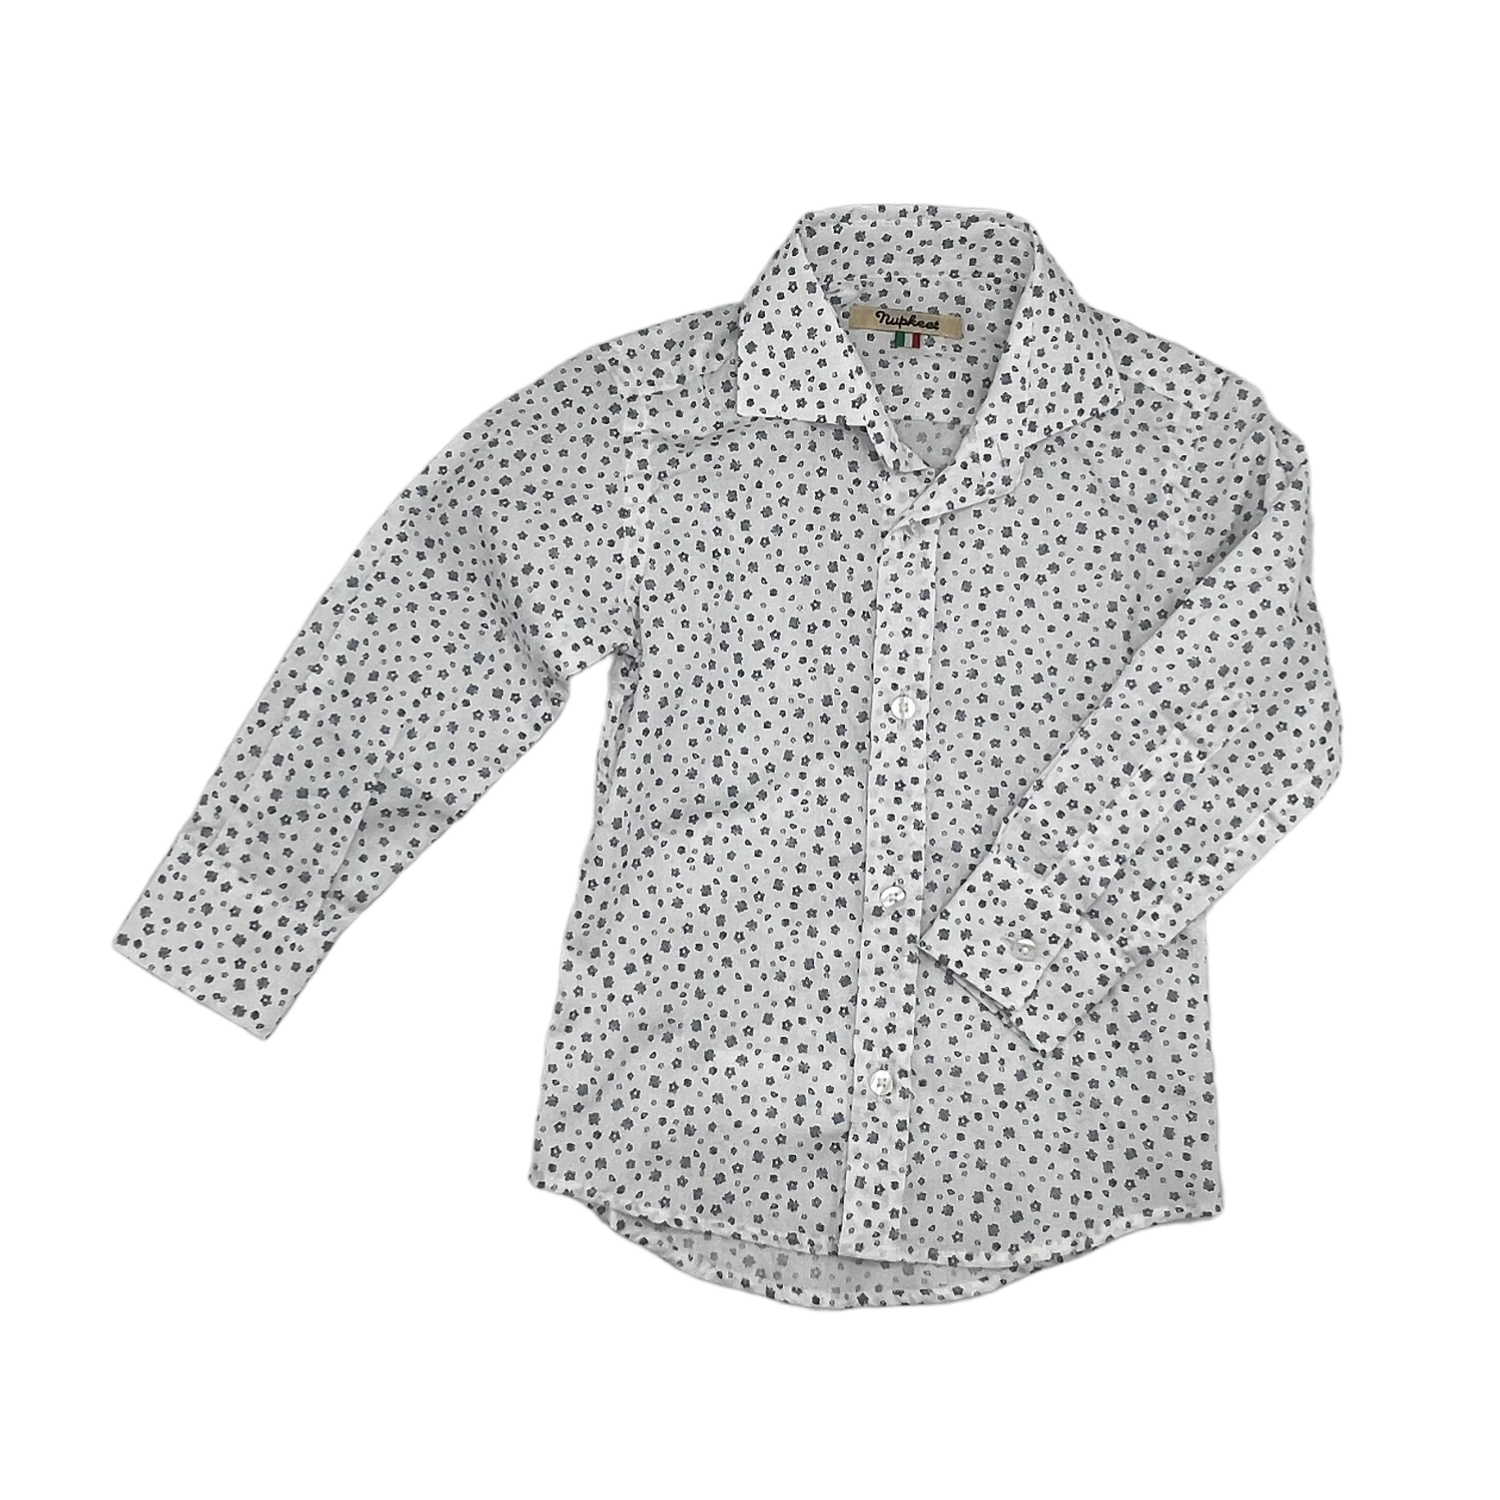 Nupkeet Bolzano Collar Shirt - White